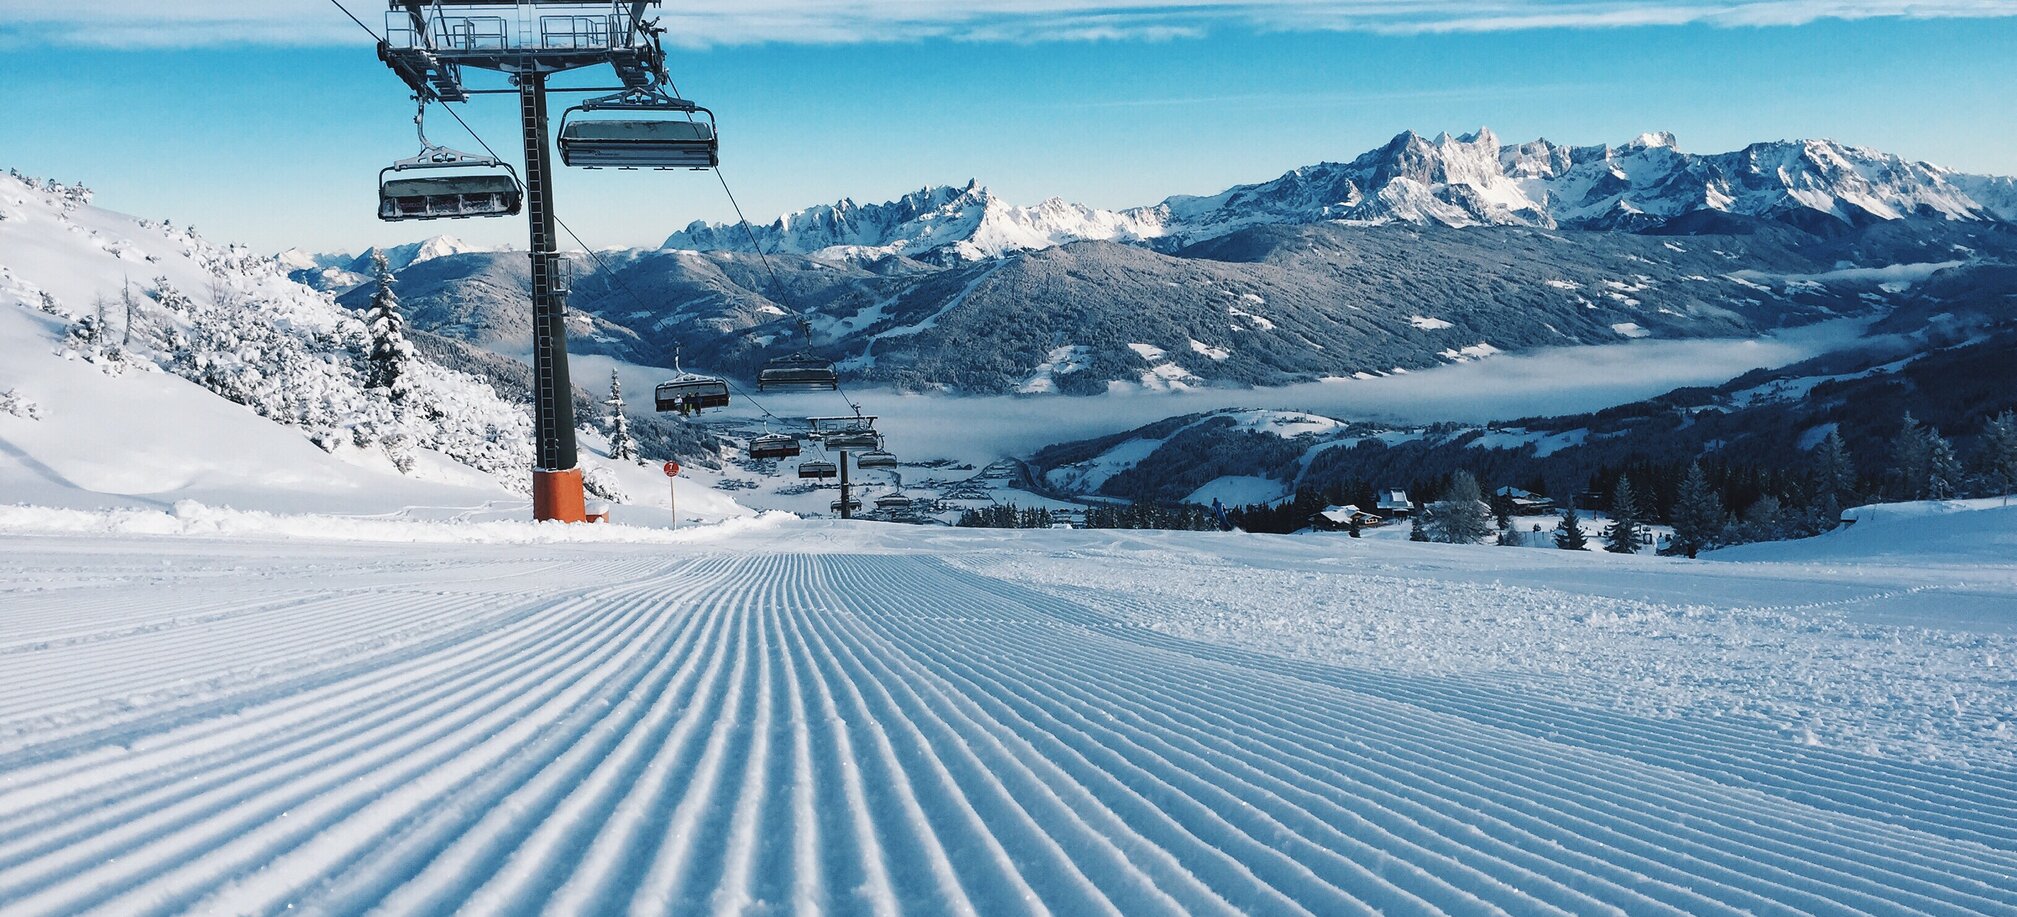 Moderne Liftanlagen und perfekte Pisten  in Ski amadé